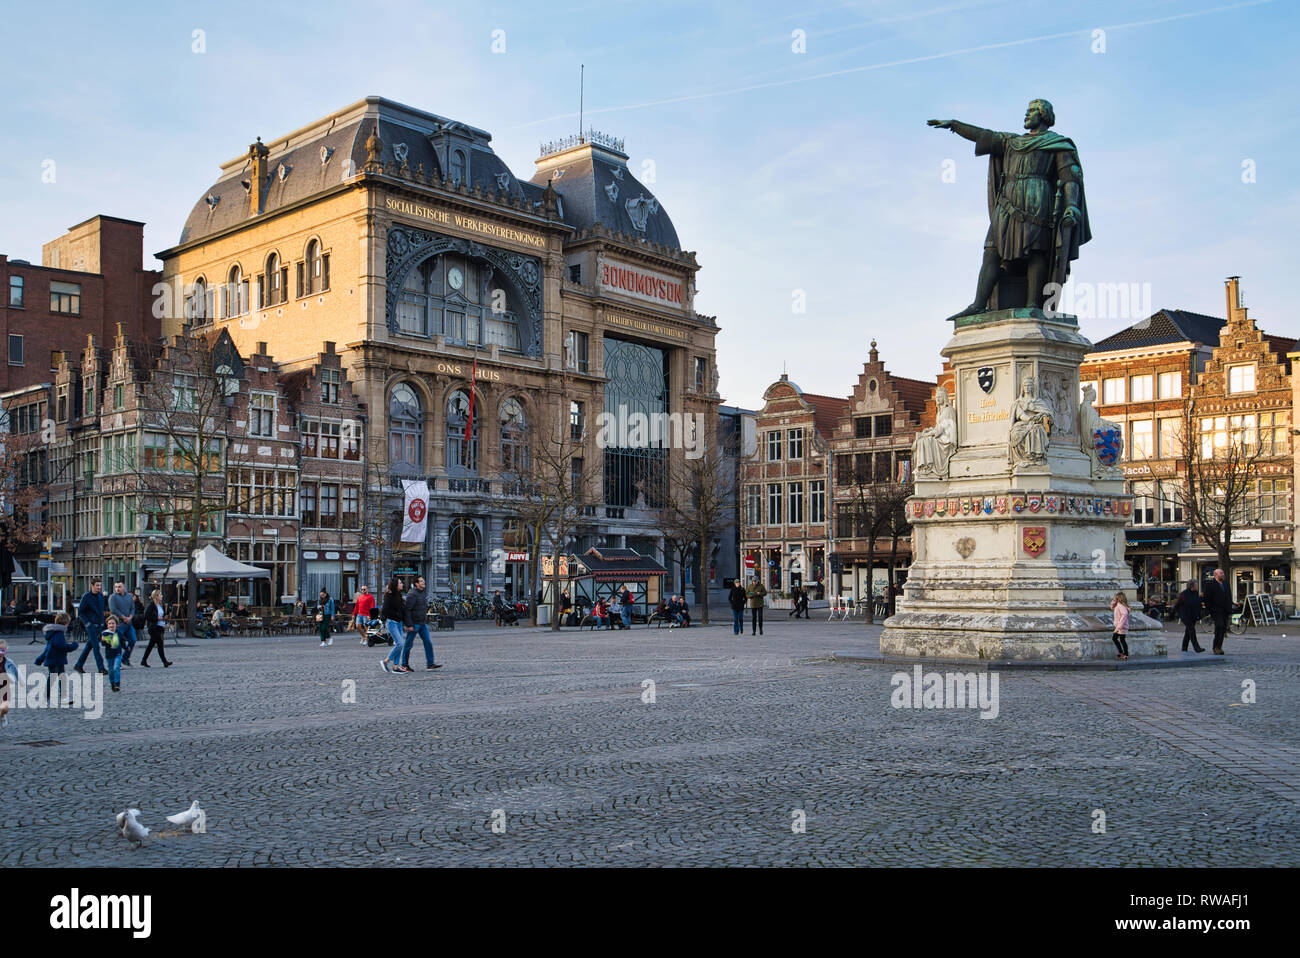 GENT, Belgio - 17 febbraio 2019: Il Venerdì la piazza del mercato, centrato su un monumento dedicato a Jacob van Artevelde Foto Stock